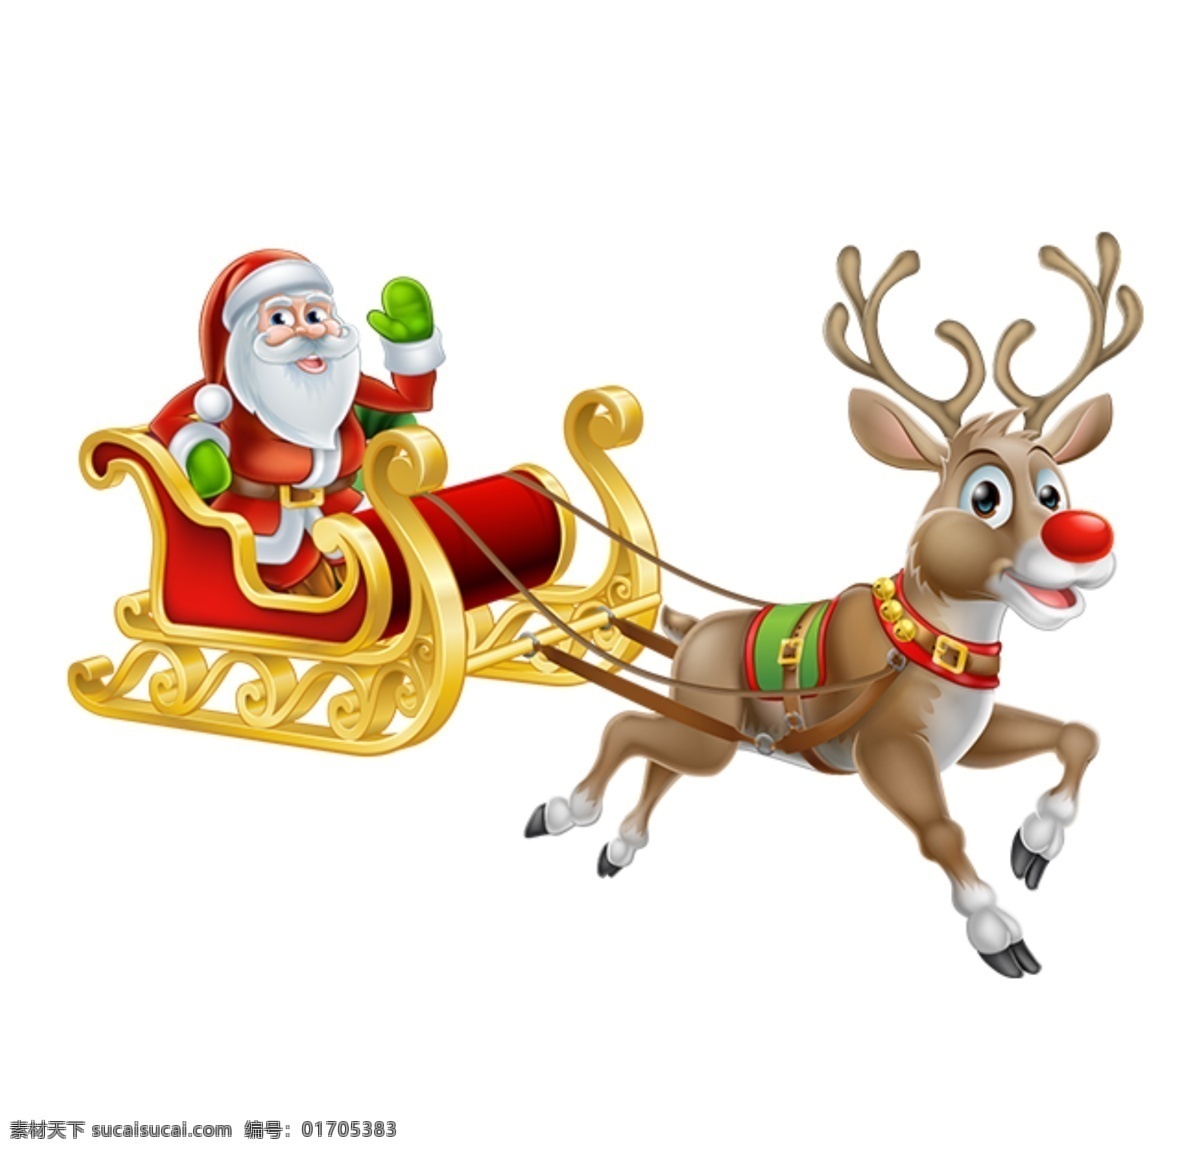 圣诞素材图片 圣诞素材 圣诞 圣诞节 圣诞拉人 圣诞树 圣诞袜 圣诞彩球 雪人 星星 彩球 外资 标签 玩偶 圣诞帽 铃铛 圣诞节礼盒 礼盒 圣诞节拐杖 圣诞糖果 糖果 素材图